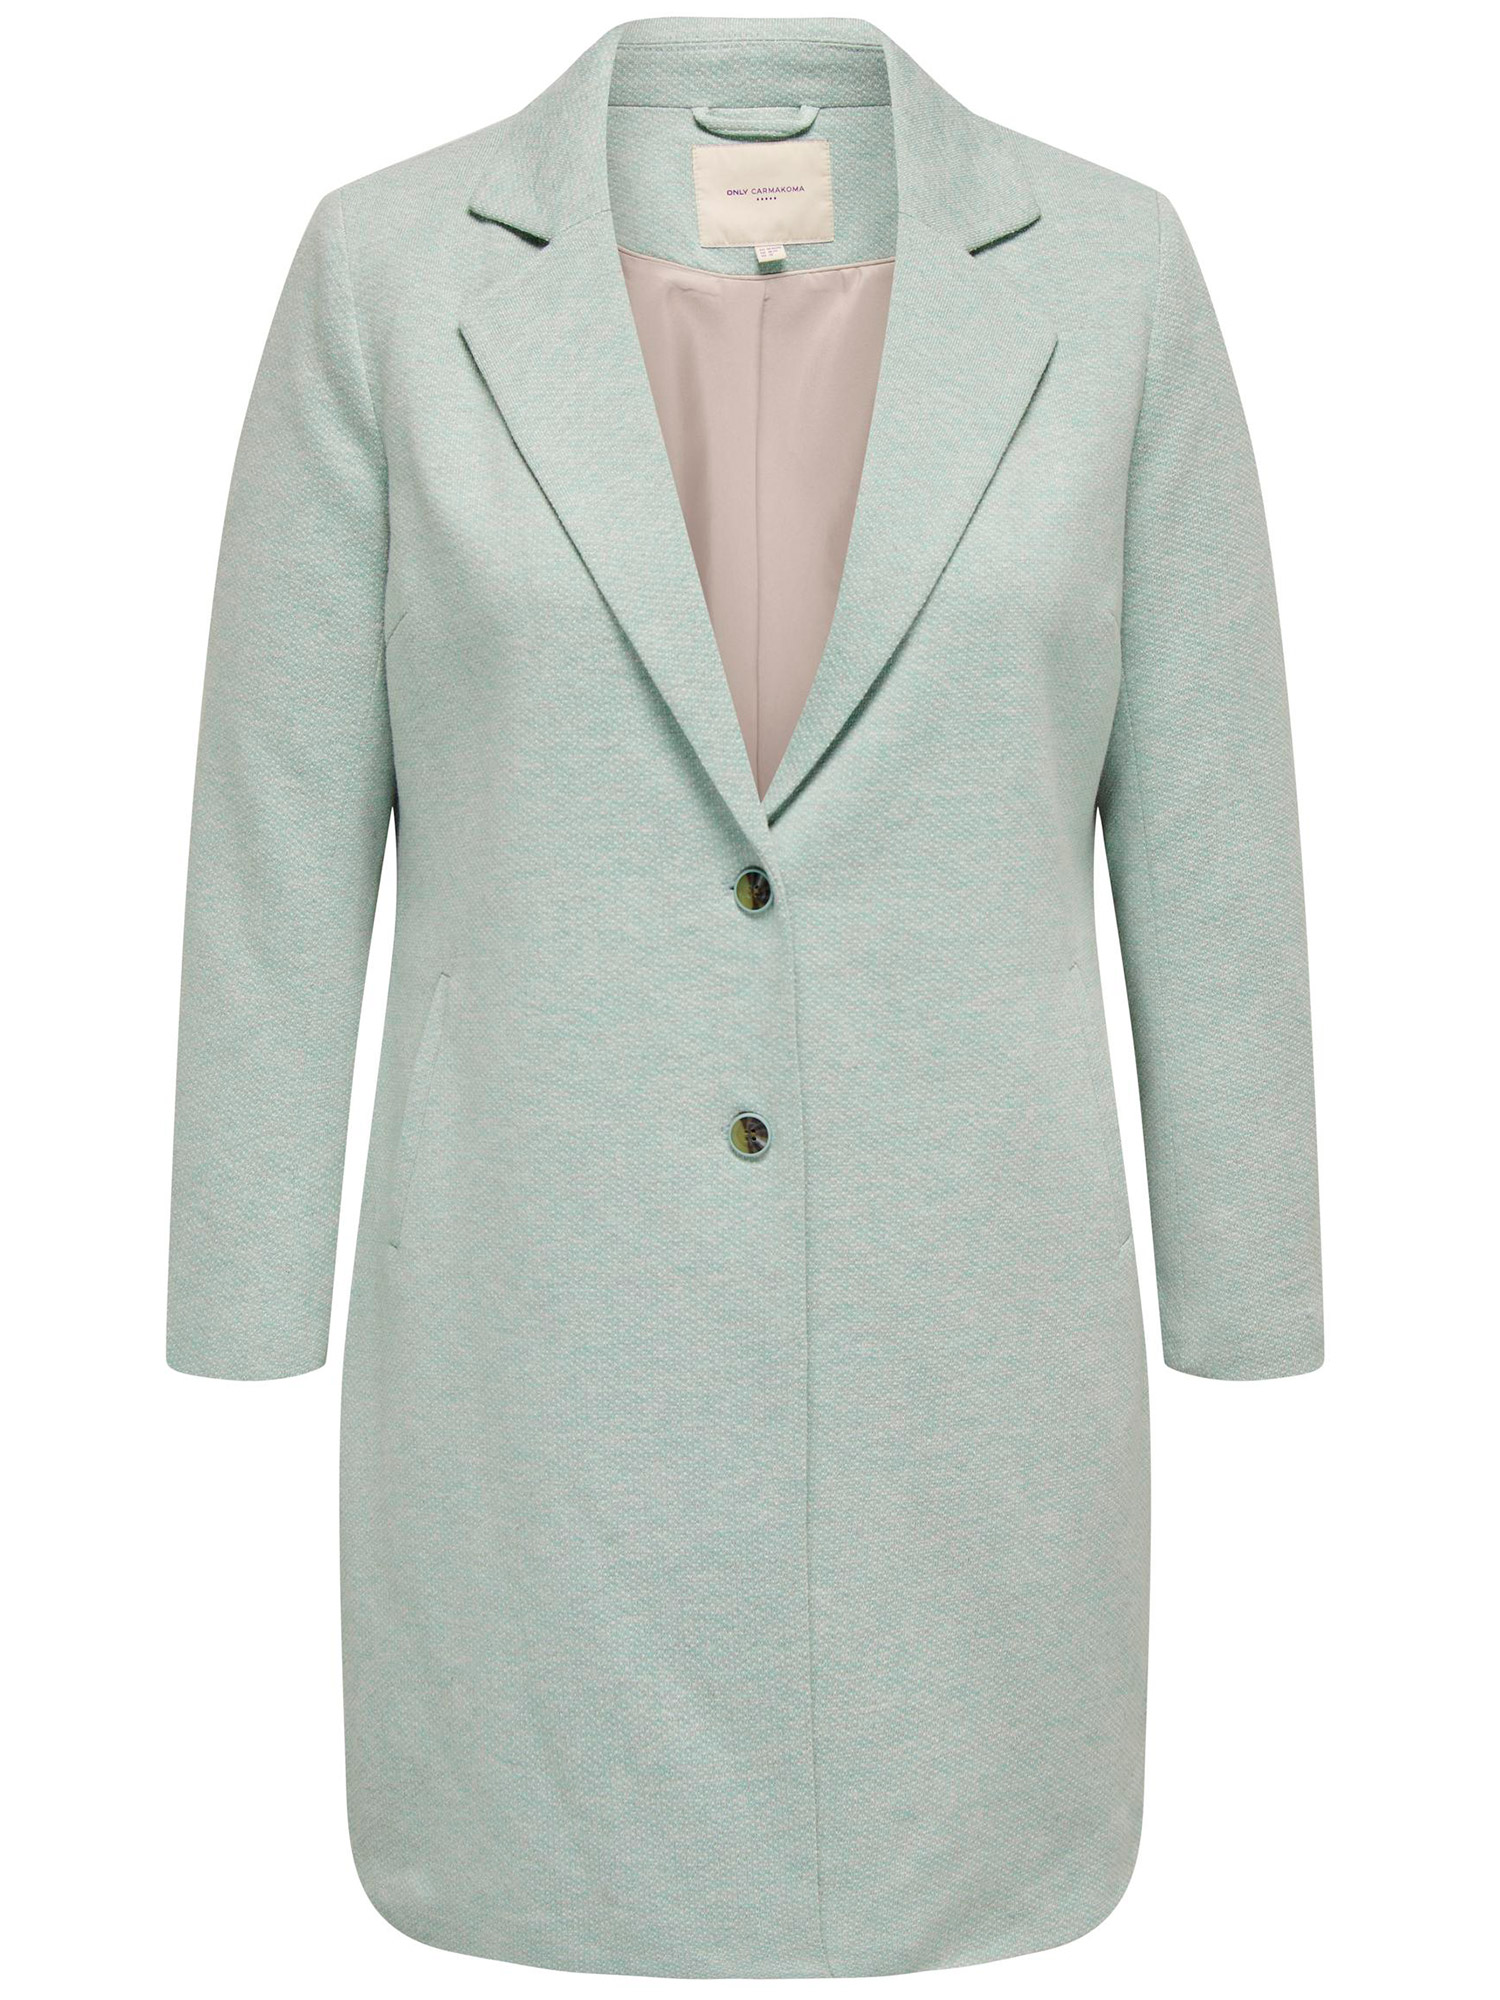 CARRIE - Lang lysegrøn jakke i blød bomulds kvalitet fra Only Carmakoma